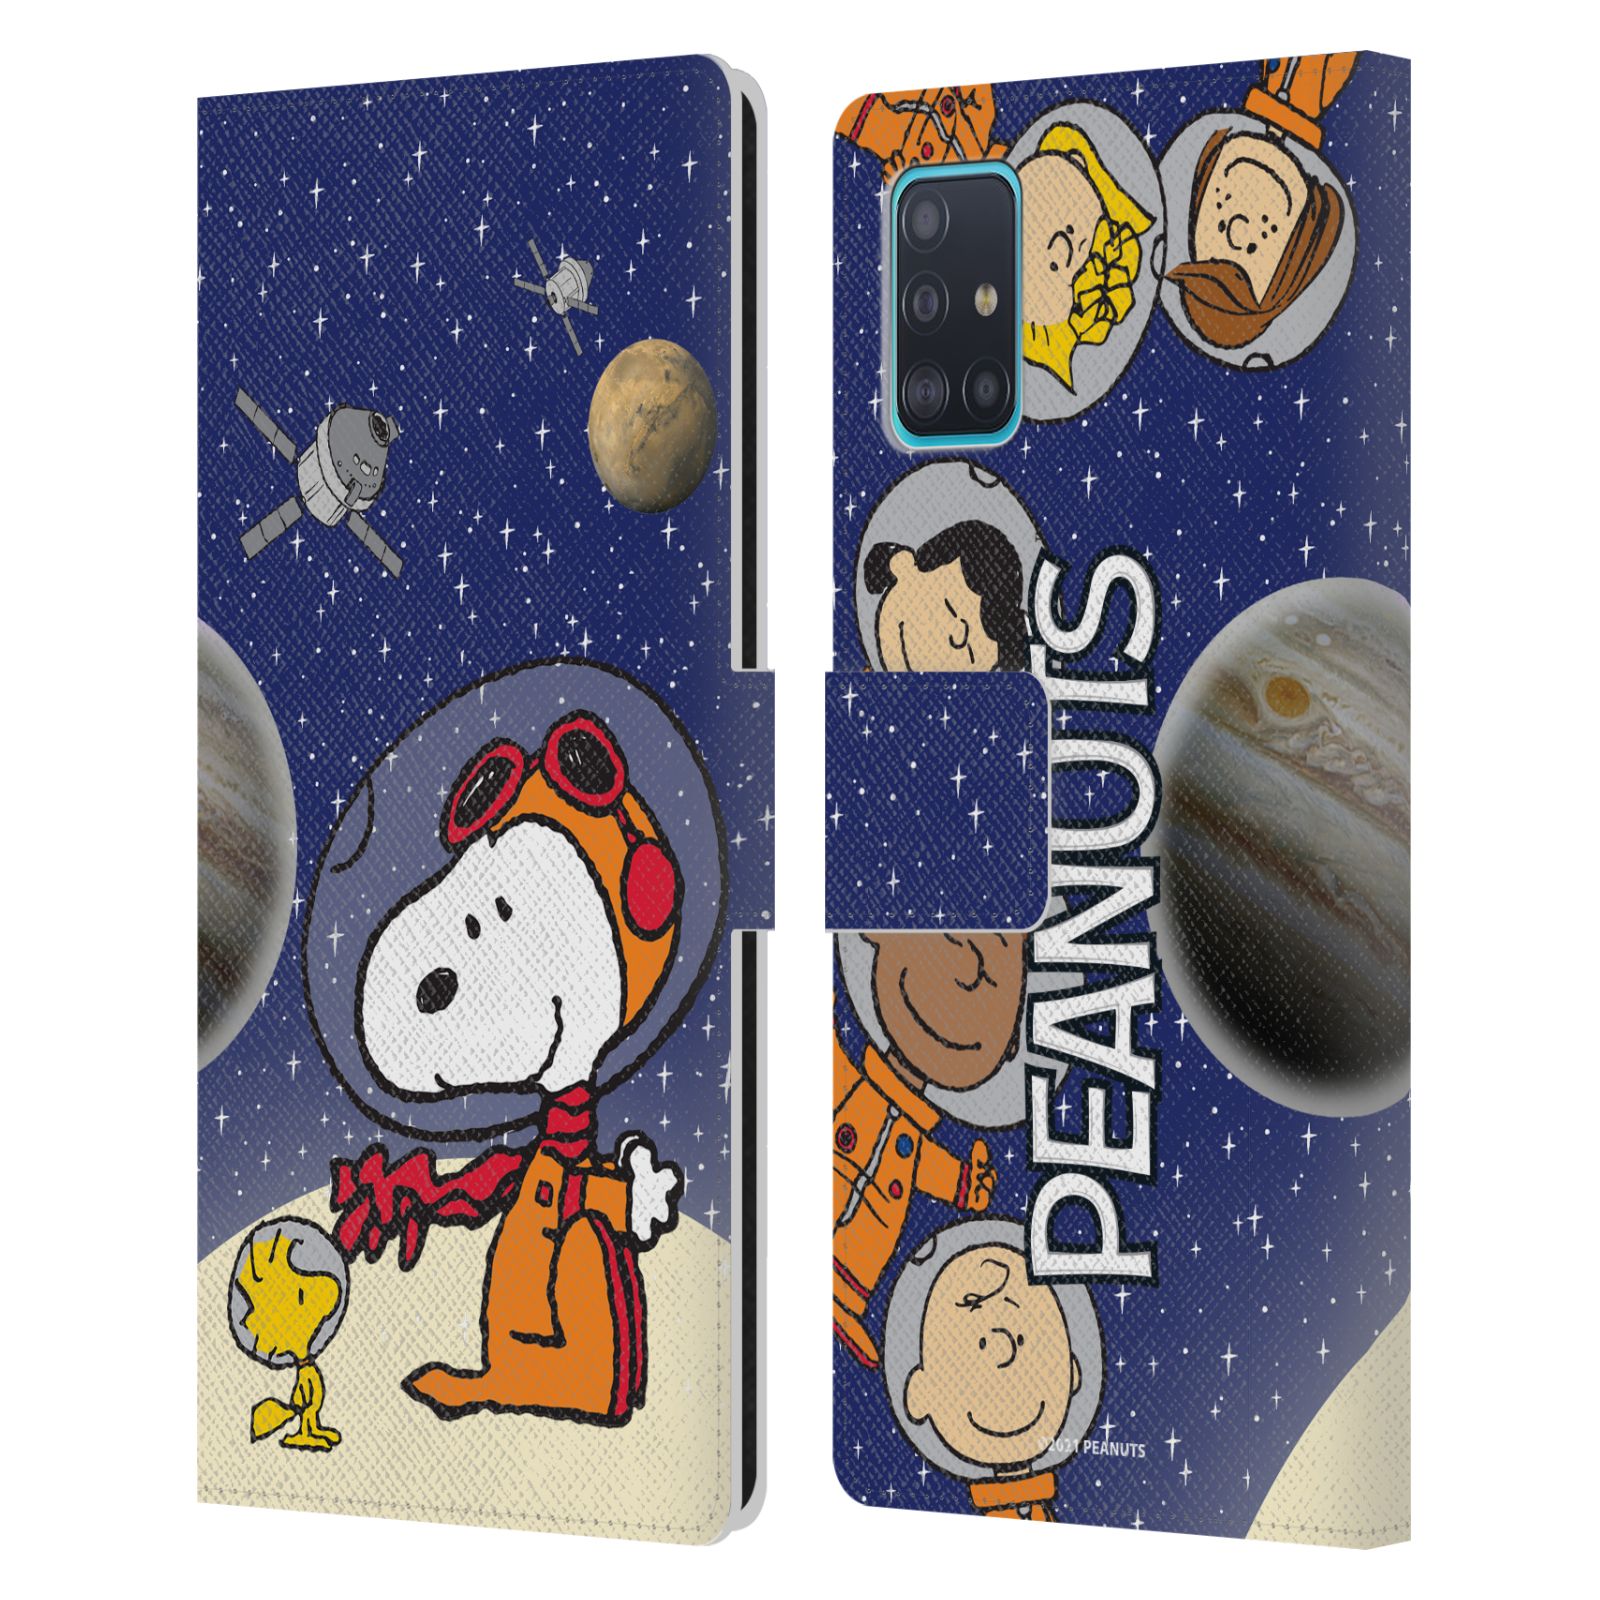 Pouzdro na mobil Samsung Galaxy A51 - HEAD CASE - Peanuts Snoopy ve vesmíru 2